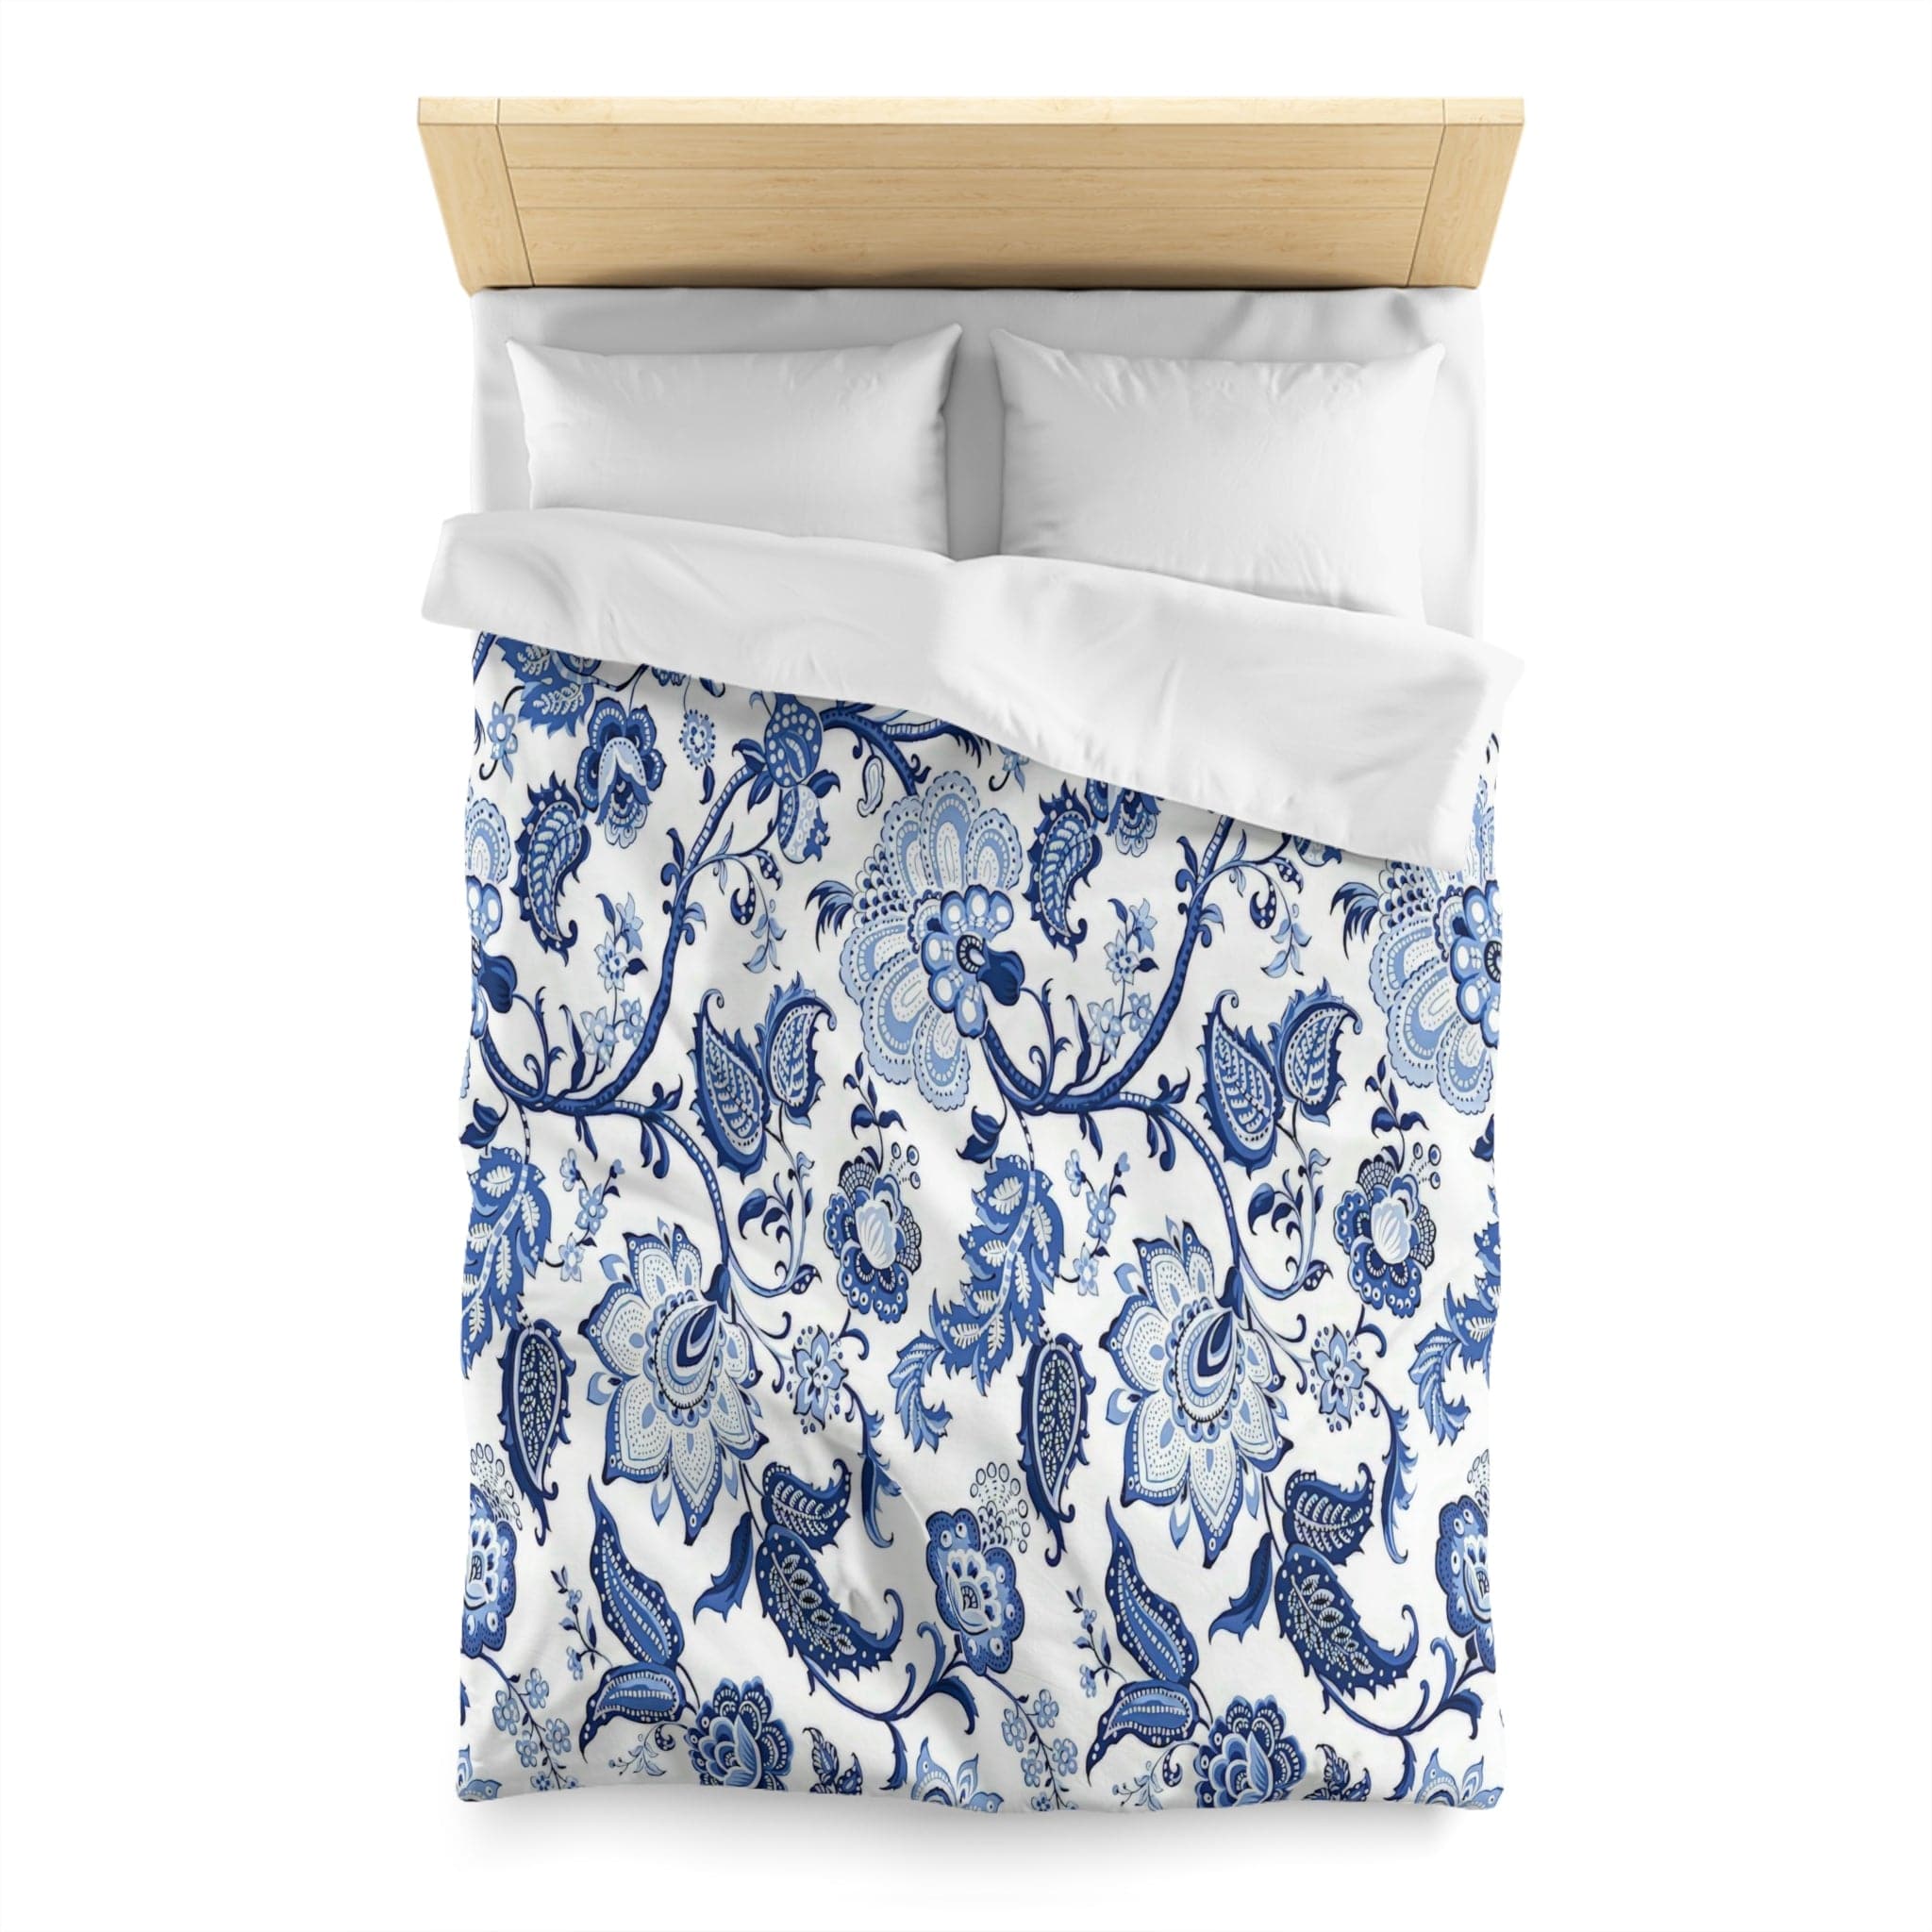 Kate McEnroe New York Blue and White Chinoiserie Jacobean Floral Microfiber Duvet Cover, Grandmillenial Bedroom DecorDuvet Covers19883540189661238814